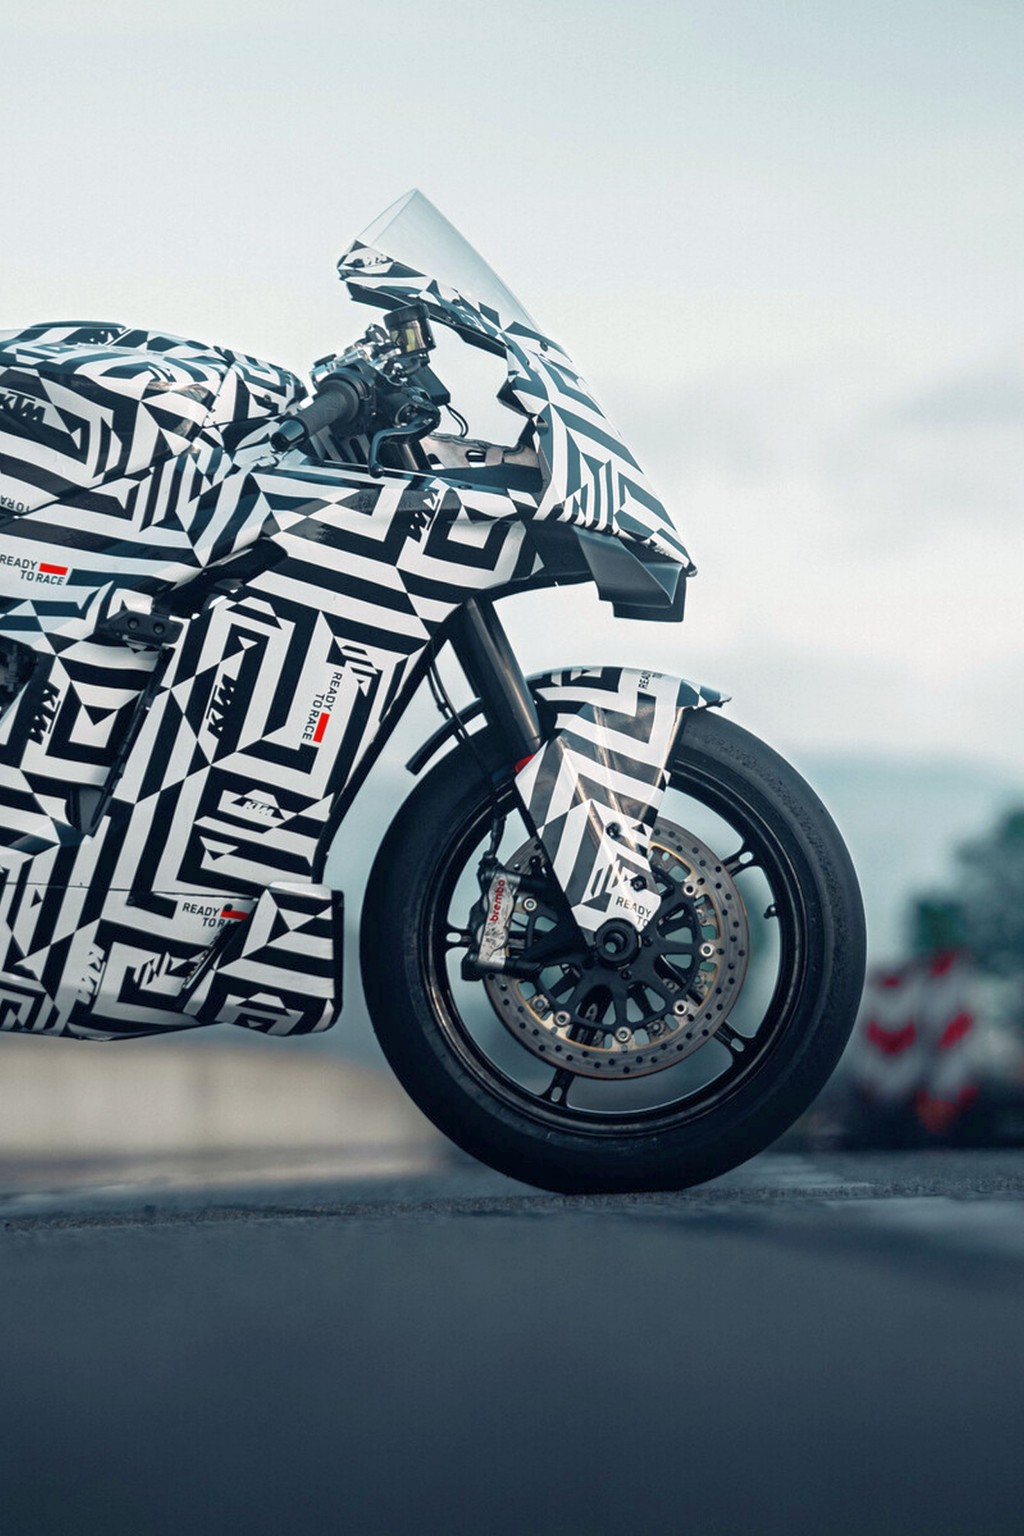 KTM 990 RC R - finalmente a moto desportiva puro-sangue para a estrada! - Imagem 14